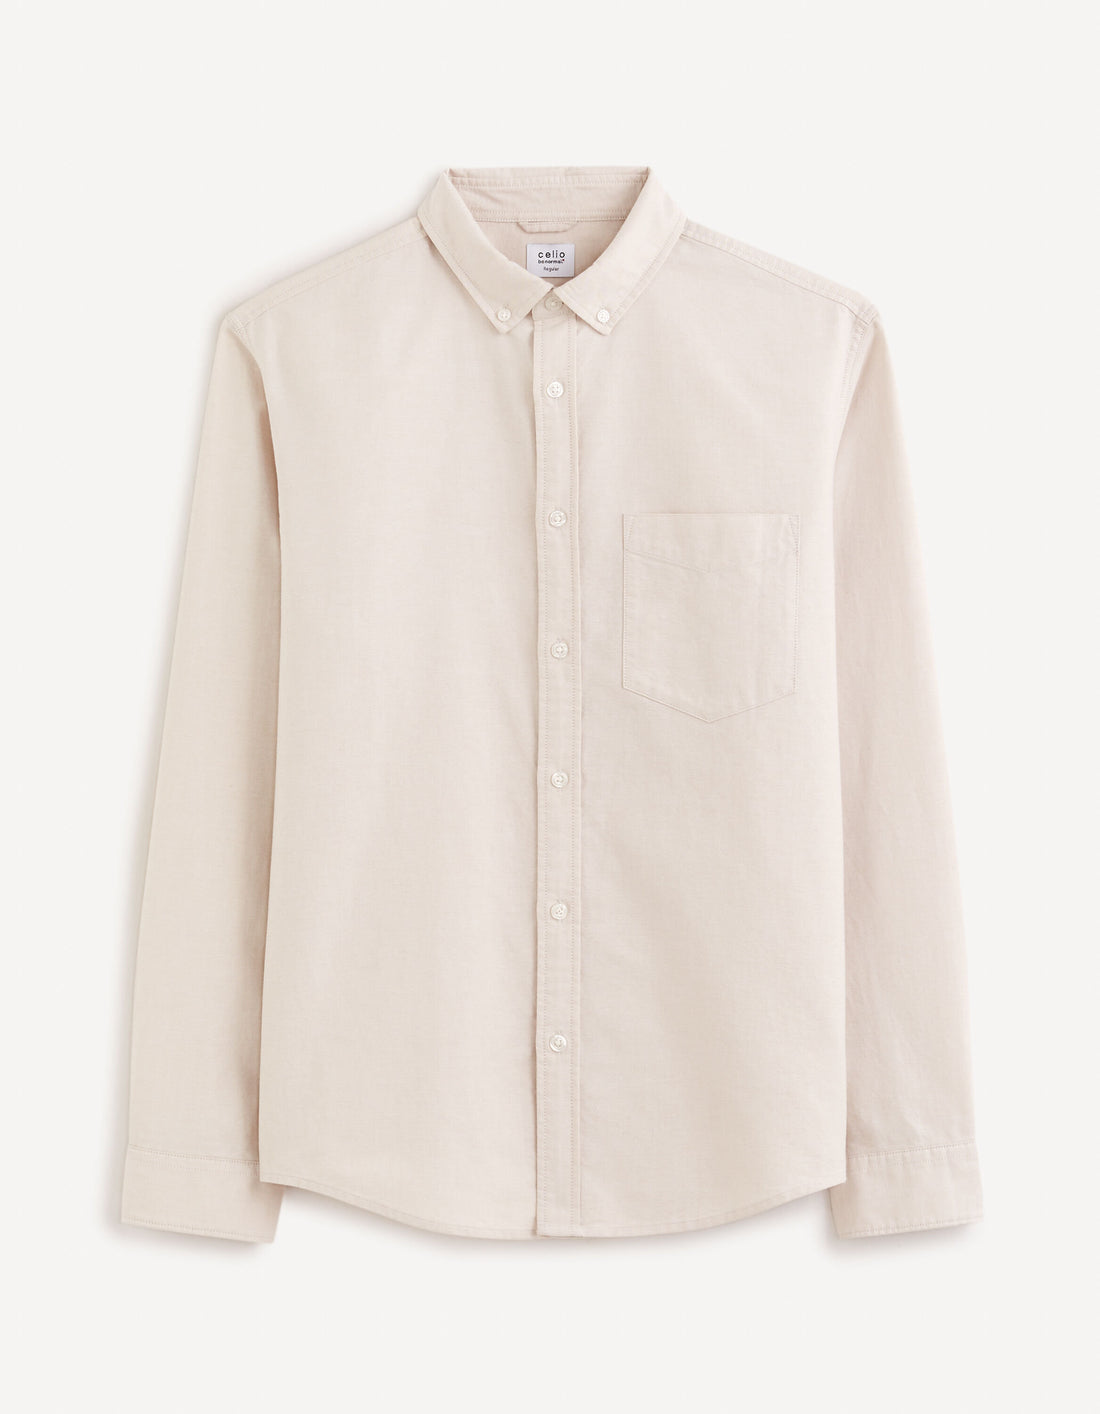 Regular Shirt 100% Oxford Cotton - Beige_DAXFORD_BEIGE_02